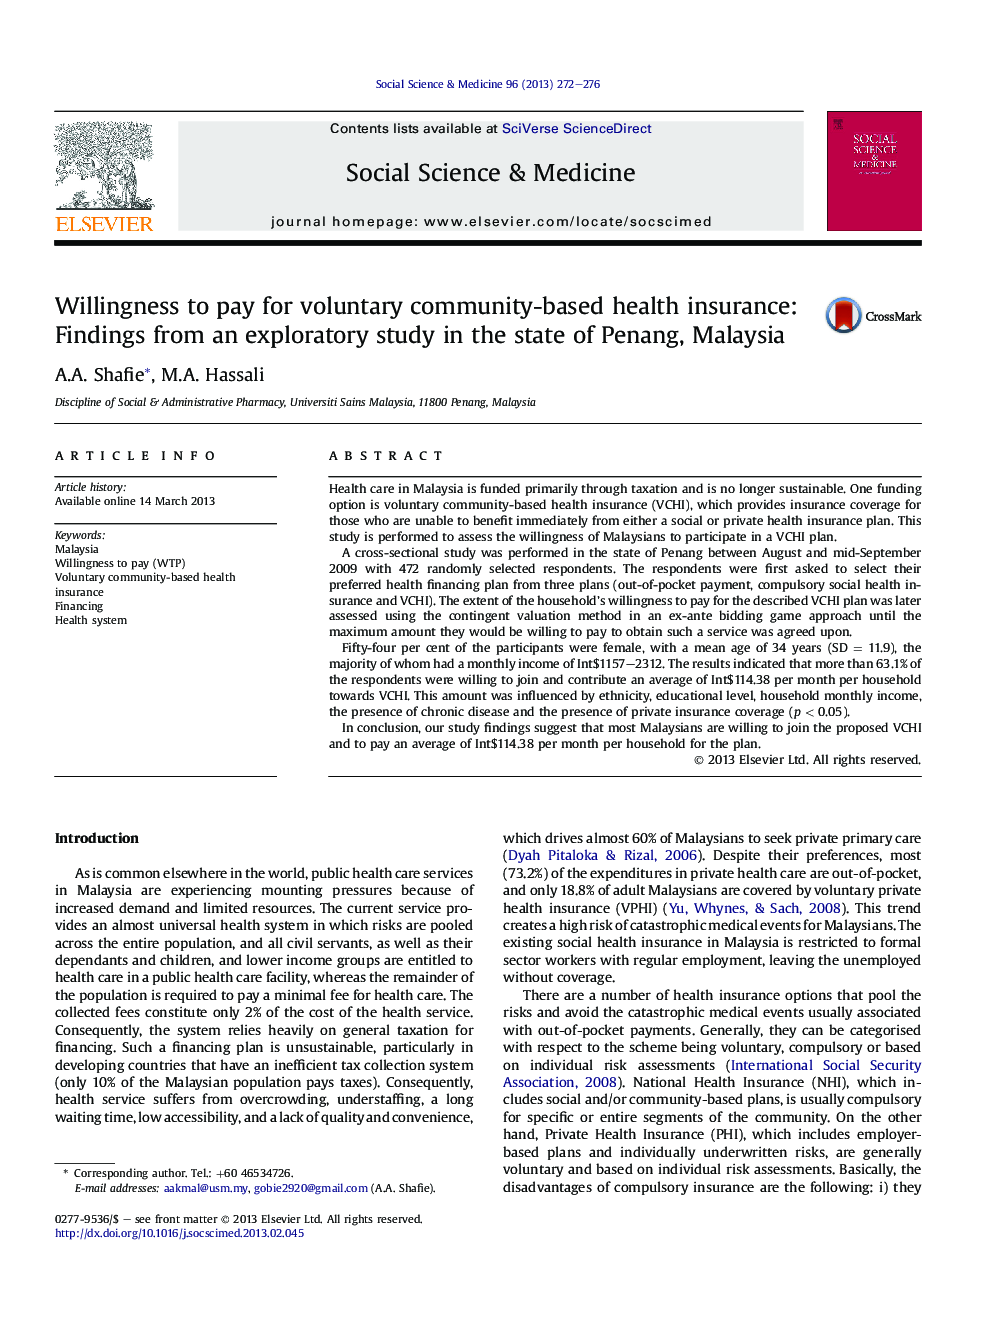 آمادگی برای پرداخت داوطلبانه بیمه درمانی بر اساس جامعه: یافته های یک مطالعه اکتشافی در ایالت پنانگ، مالزی 